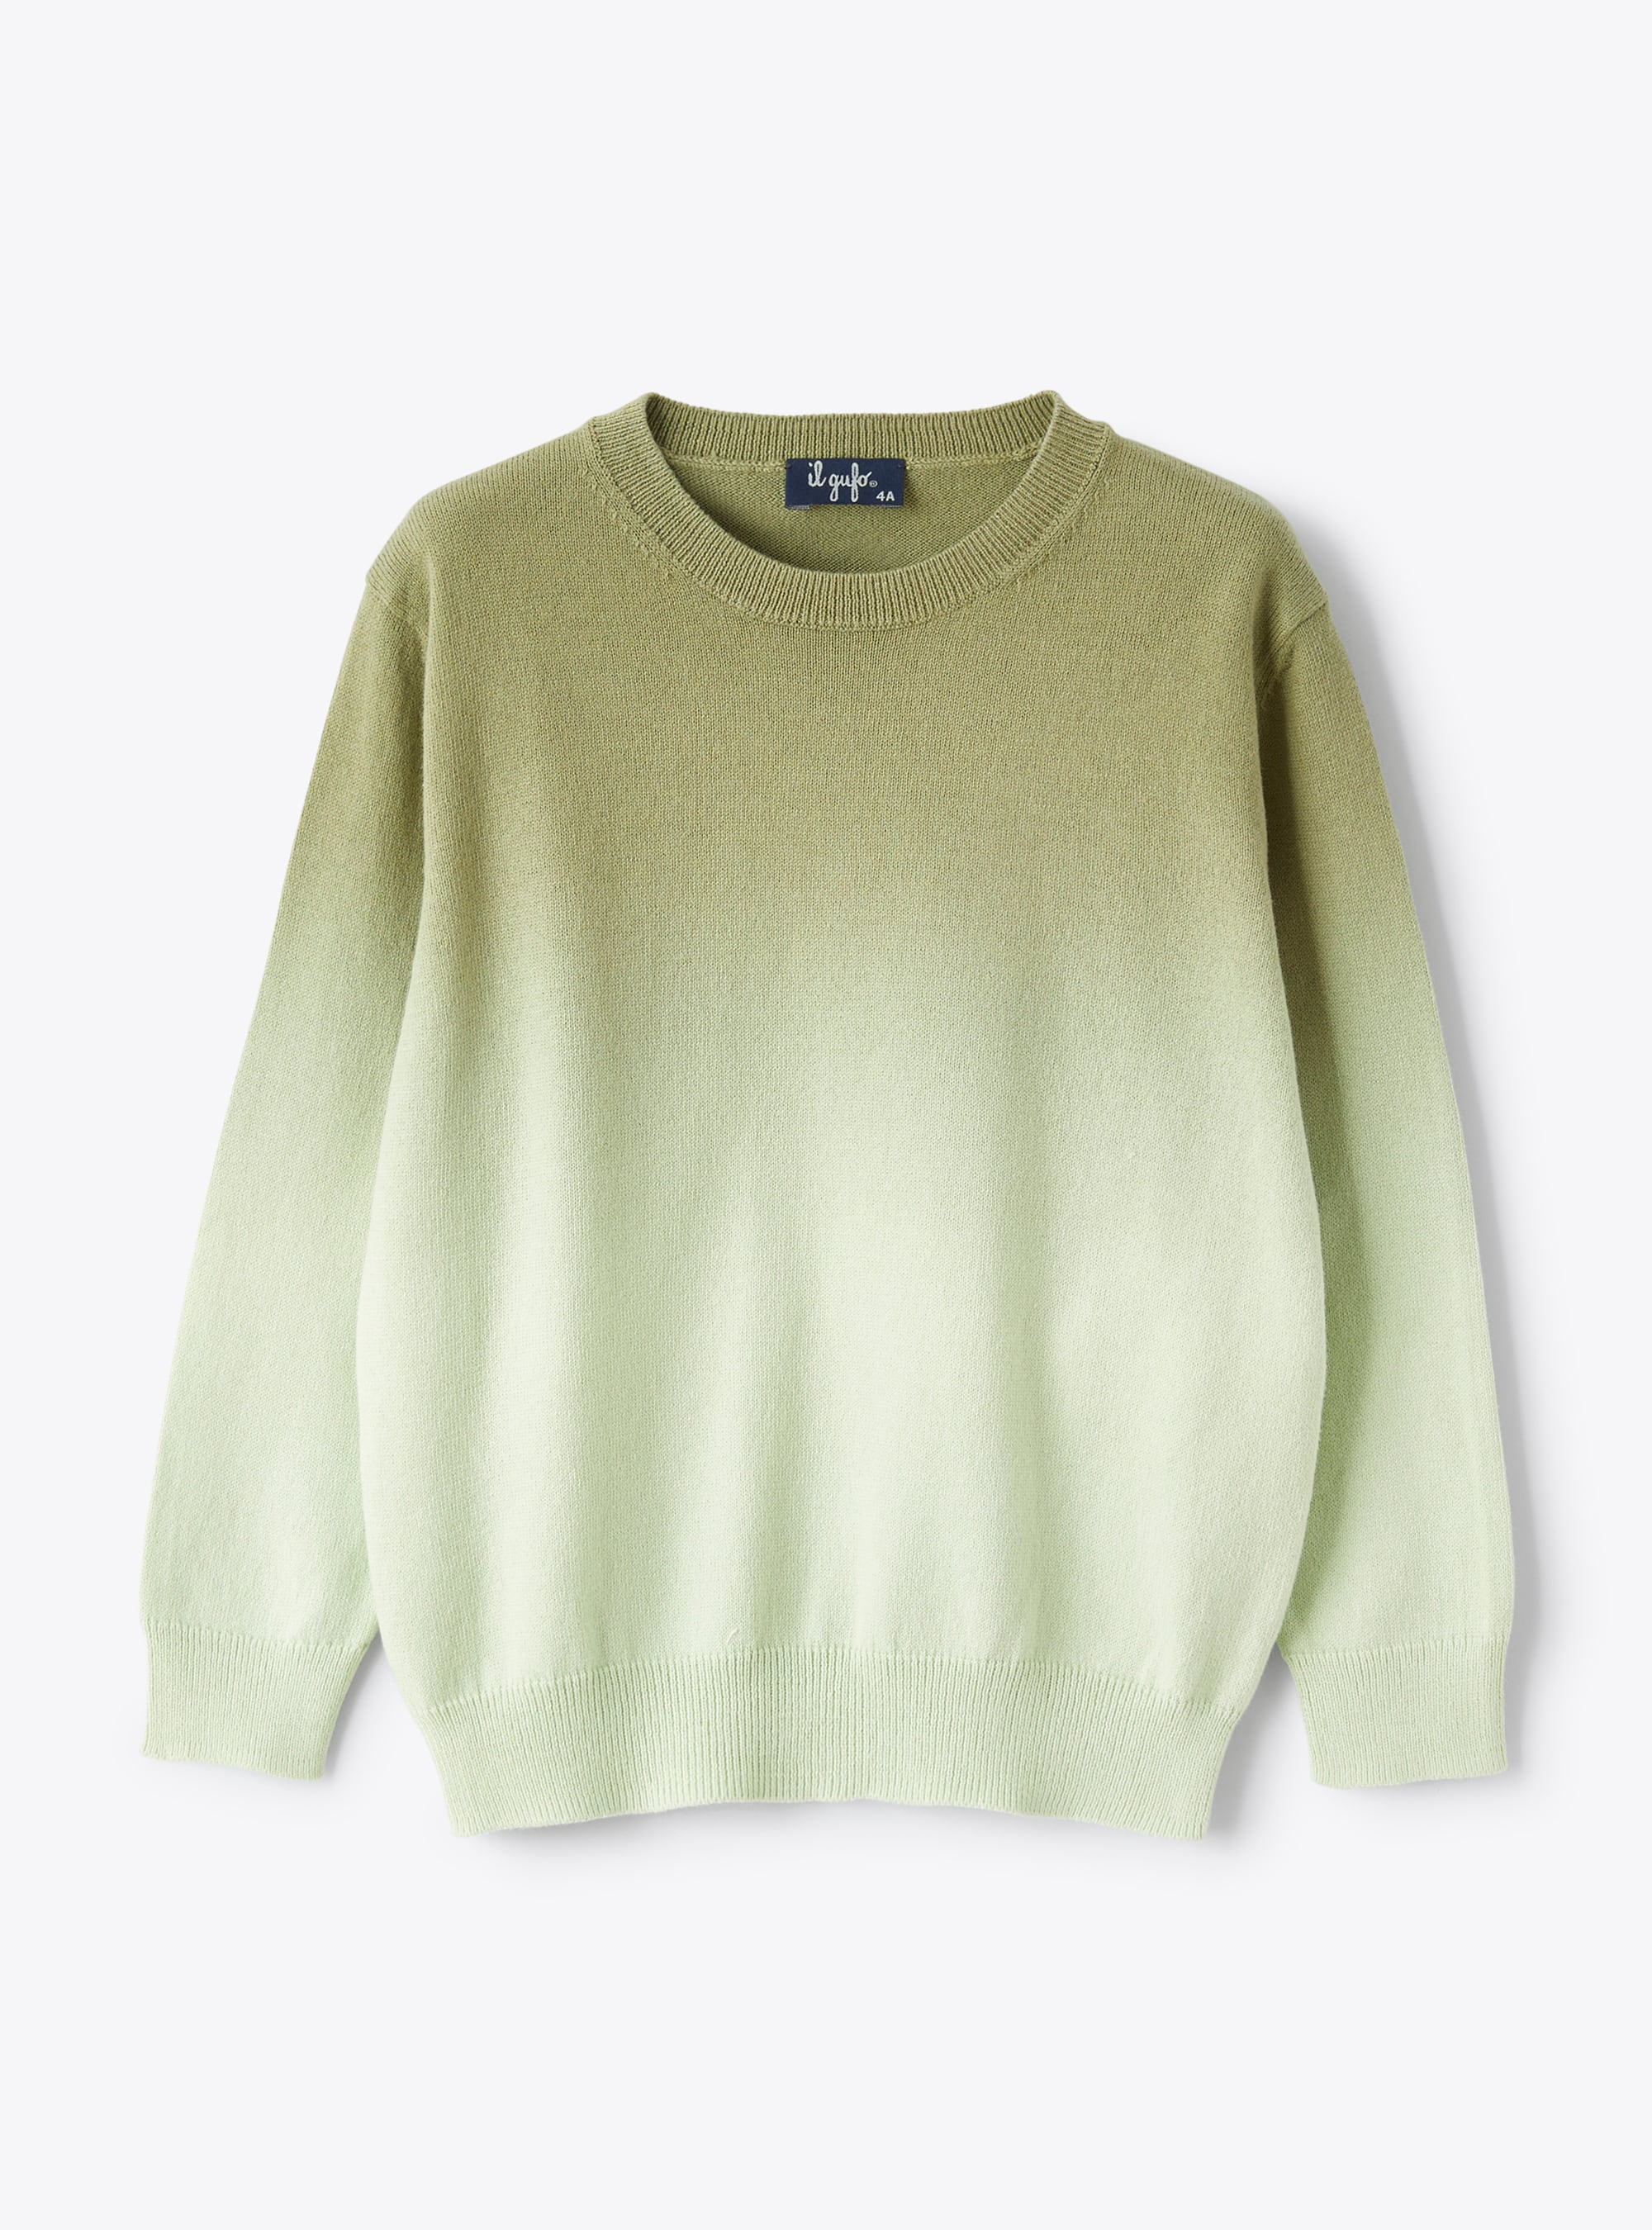 Sweater in sage-green organic cotton - Sweaters - Il Gufo